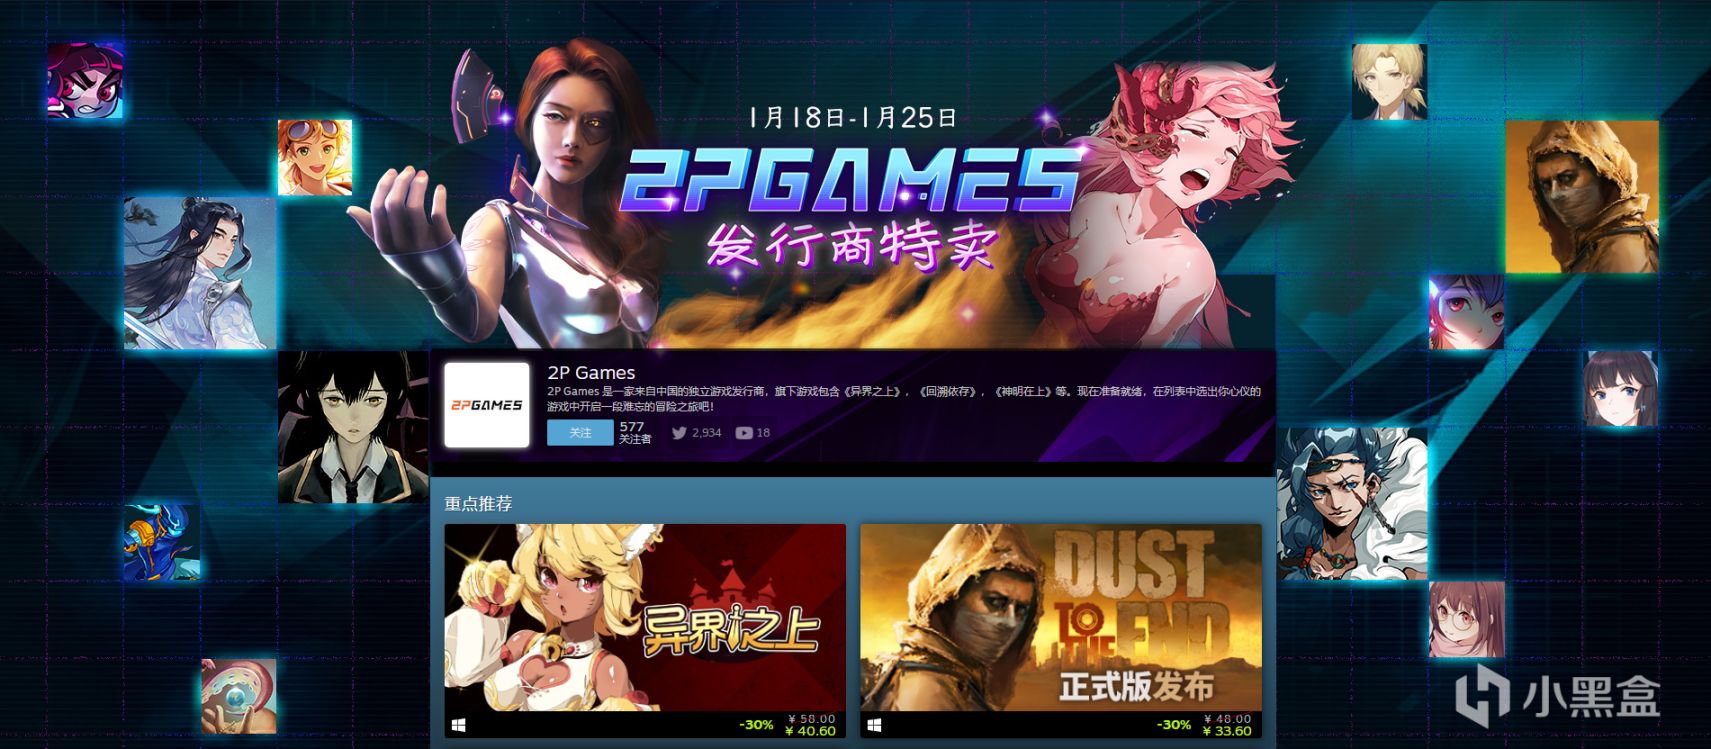 【PC游戏】2P Games发行商特卖火热进行中 超值折扣低至-70%